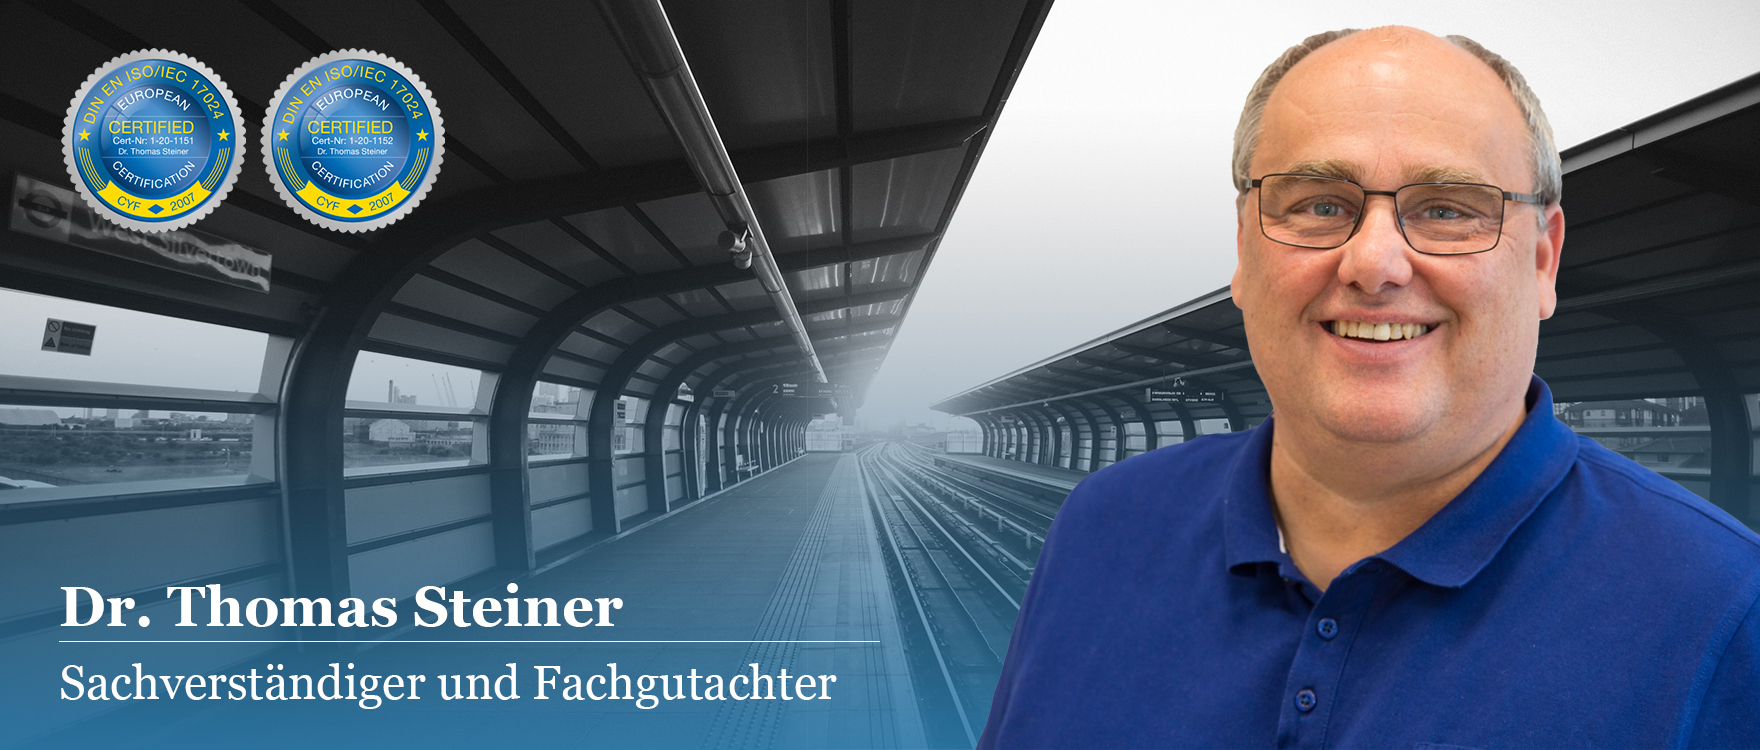 Dr. Thomas Steiner Sachverständiger und Fachgutachter Eisenbahn